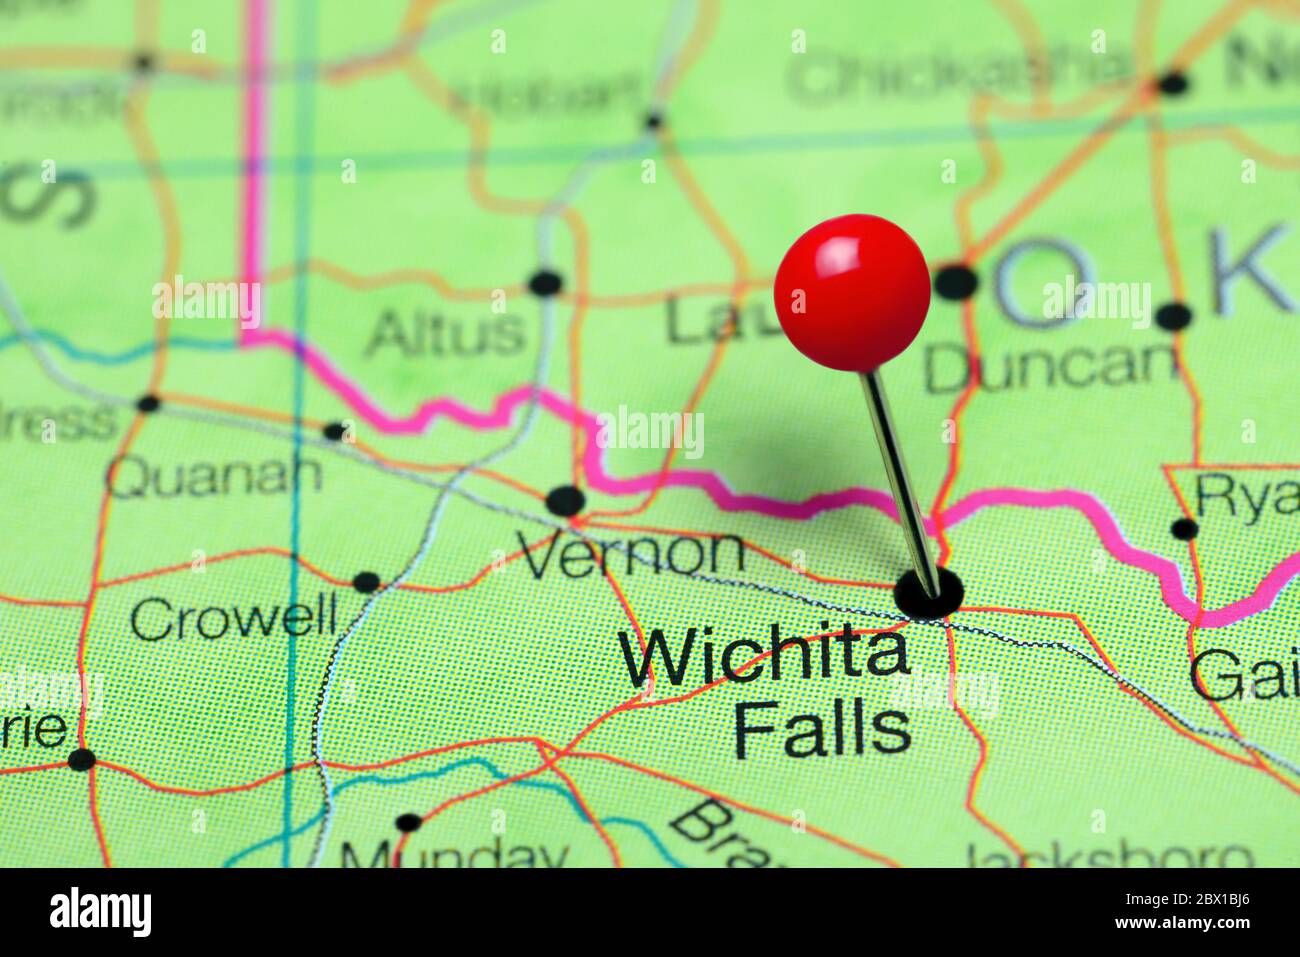 Wichita Falls pinned on a map of Texas, USA Stock Photo